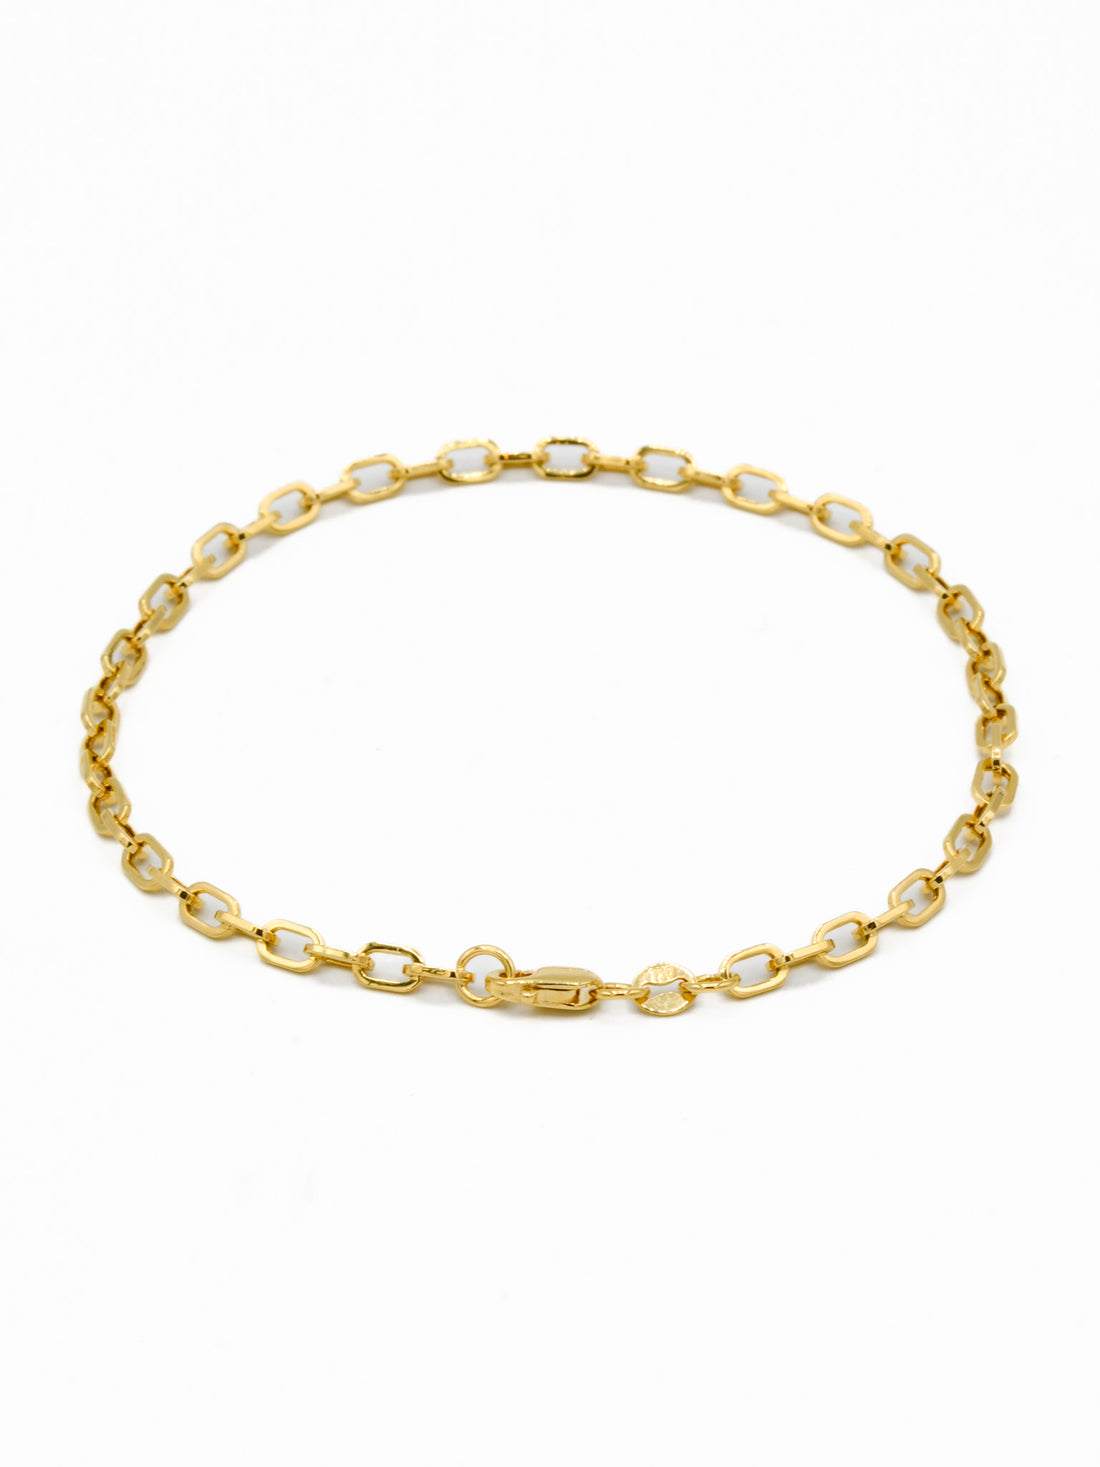 18ct Gold Hollow Link Bracelet - Roop Darshan